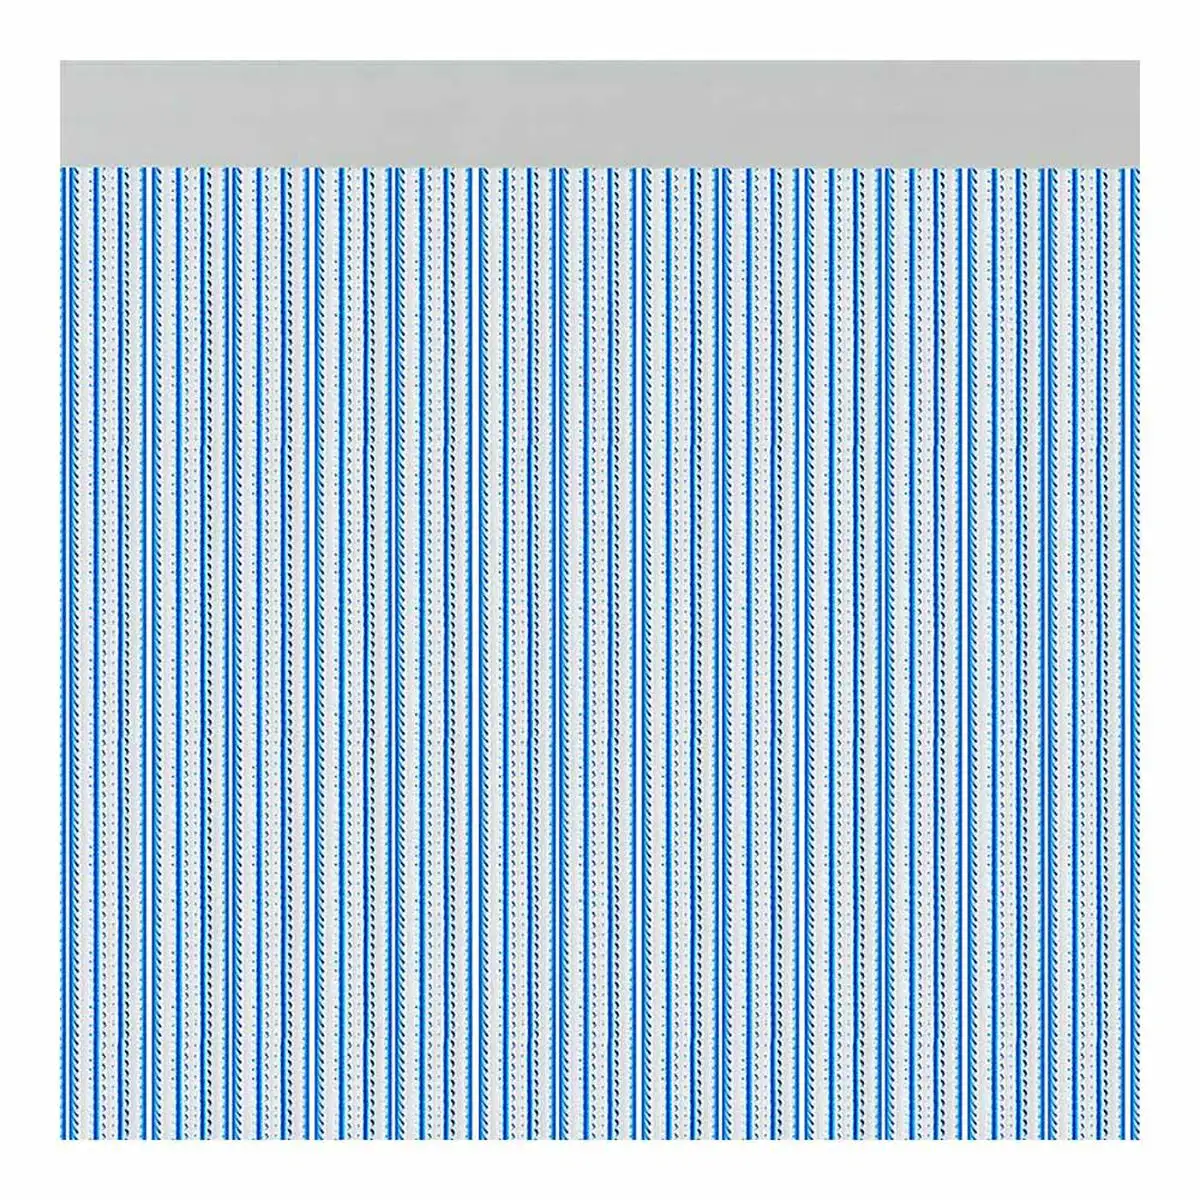 Rideau acudam brescia portes bleu exterieur pvc aluminium 90 x 210 cm_5290. DIAYTAR SENEGAL - L'Art de Choisir, l'Art de Vivre. Parcourez notre boutique en ligne et découvrez des produits qui transforment chaque choix en une expérience enrichissante.